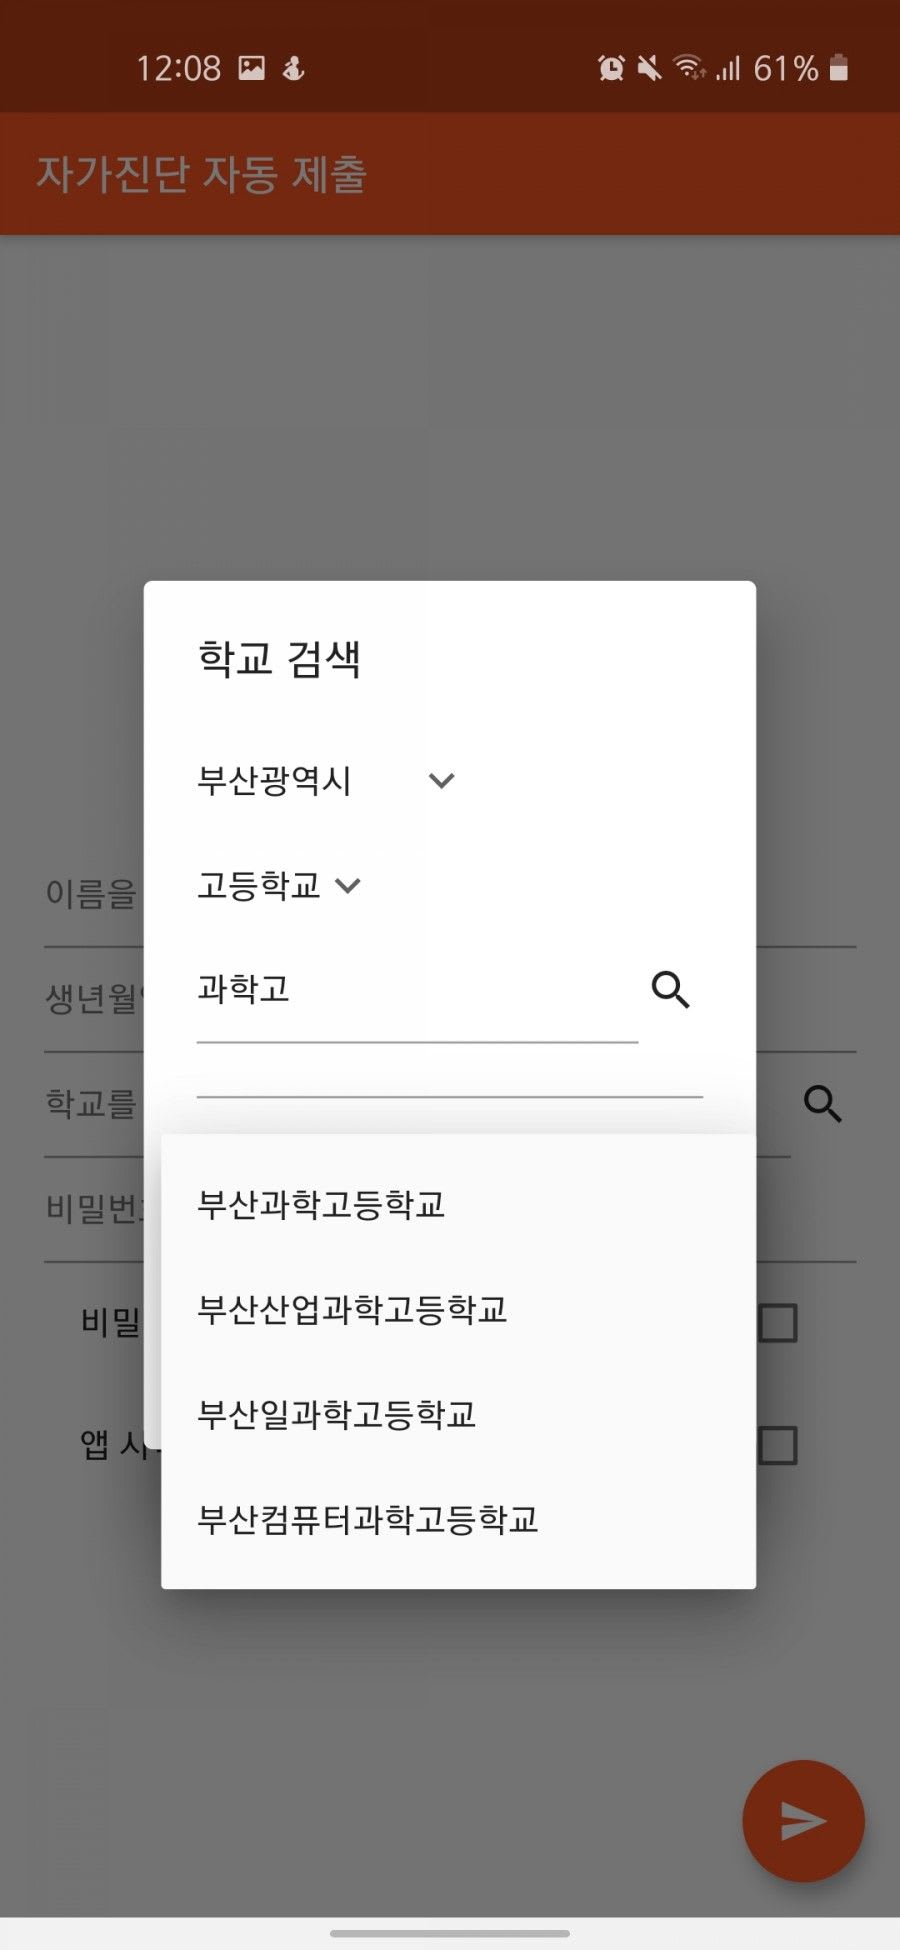 자가진단 자동화 앱 / 검색 결과